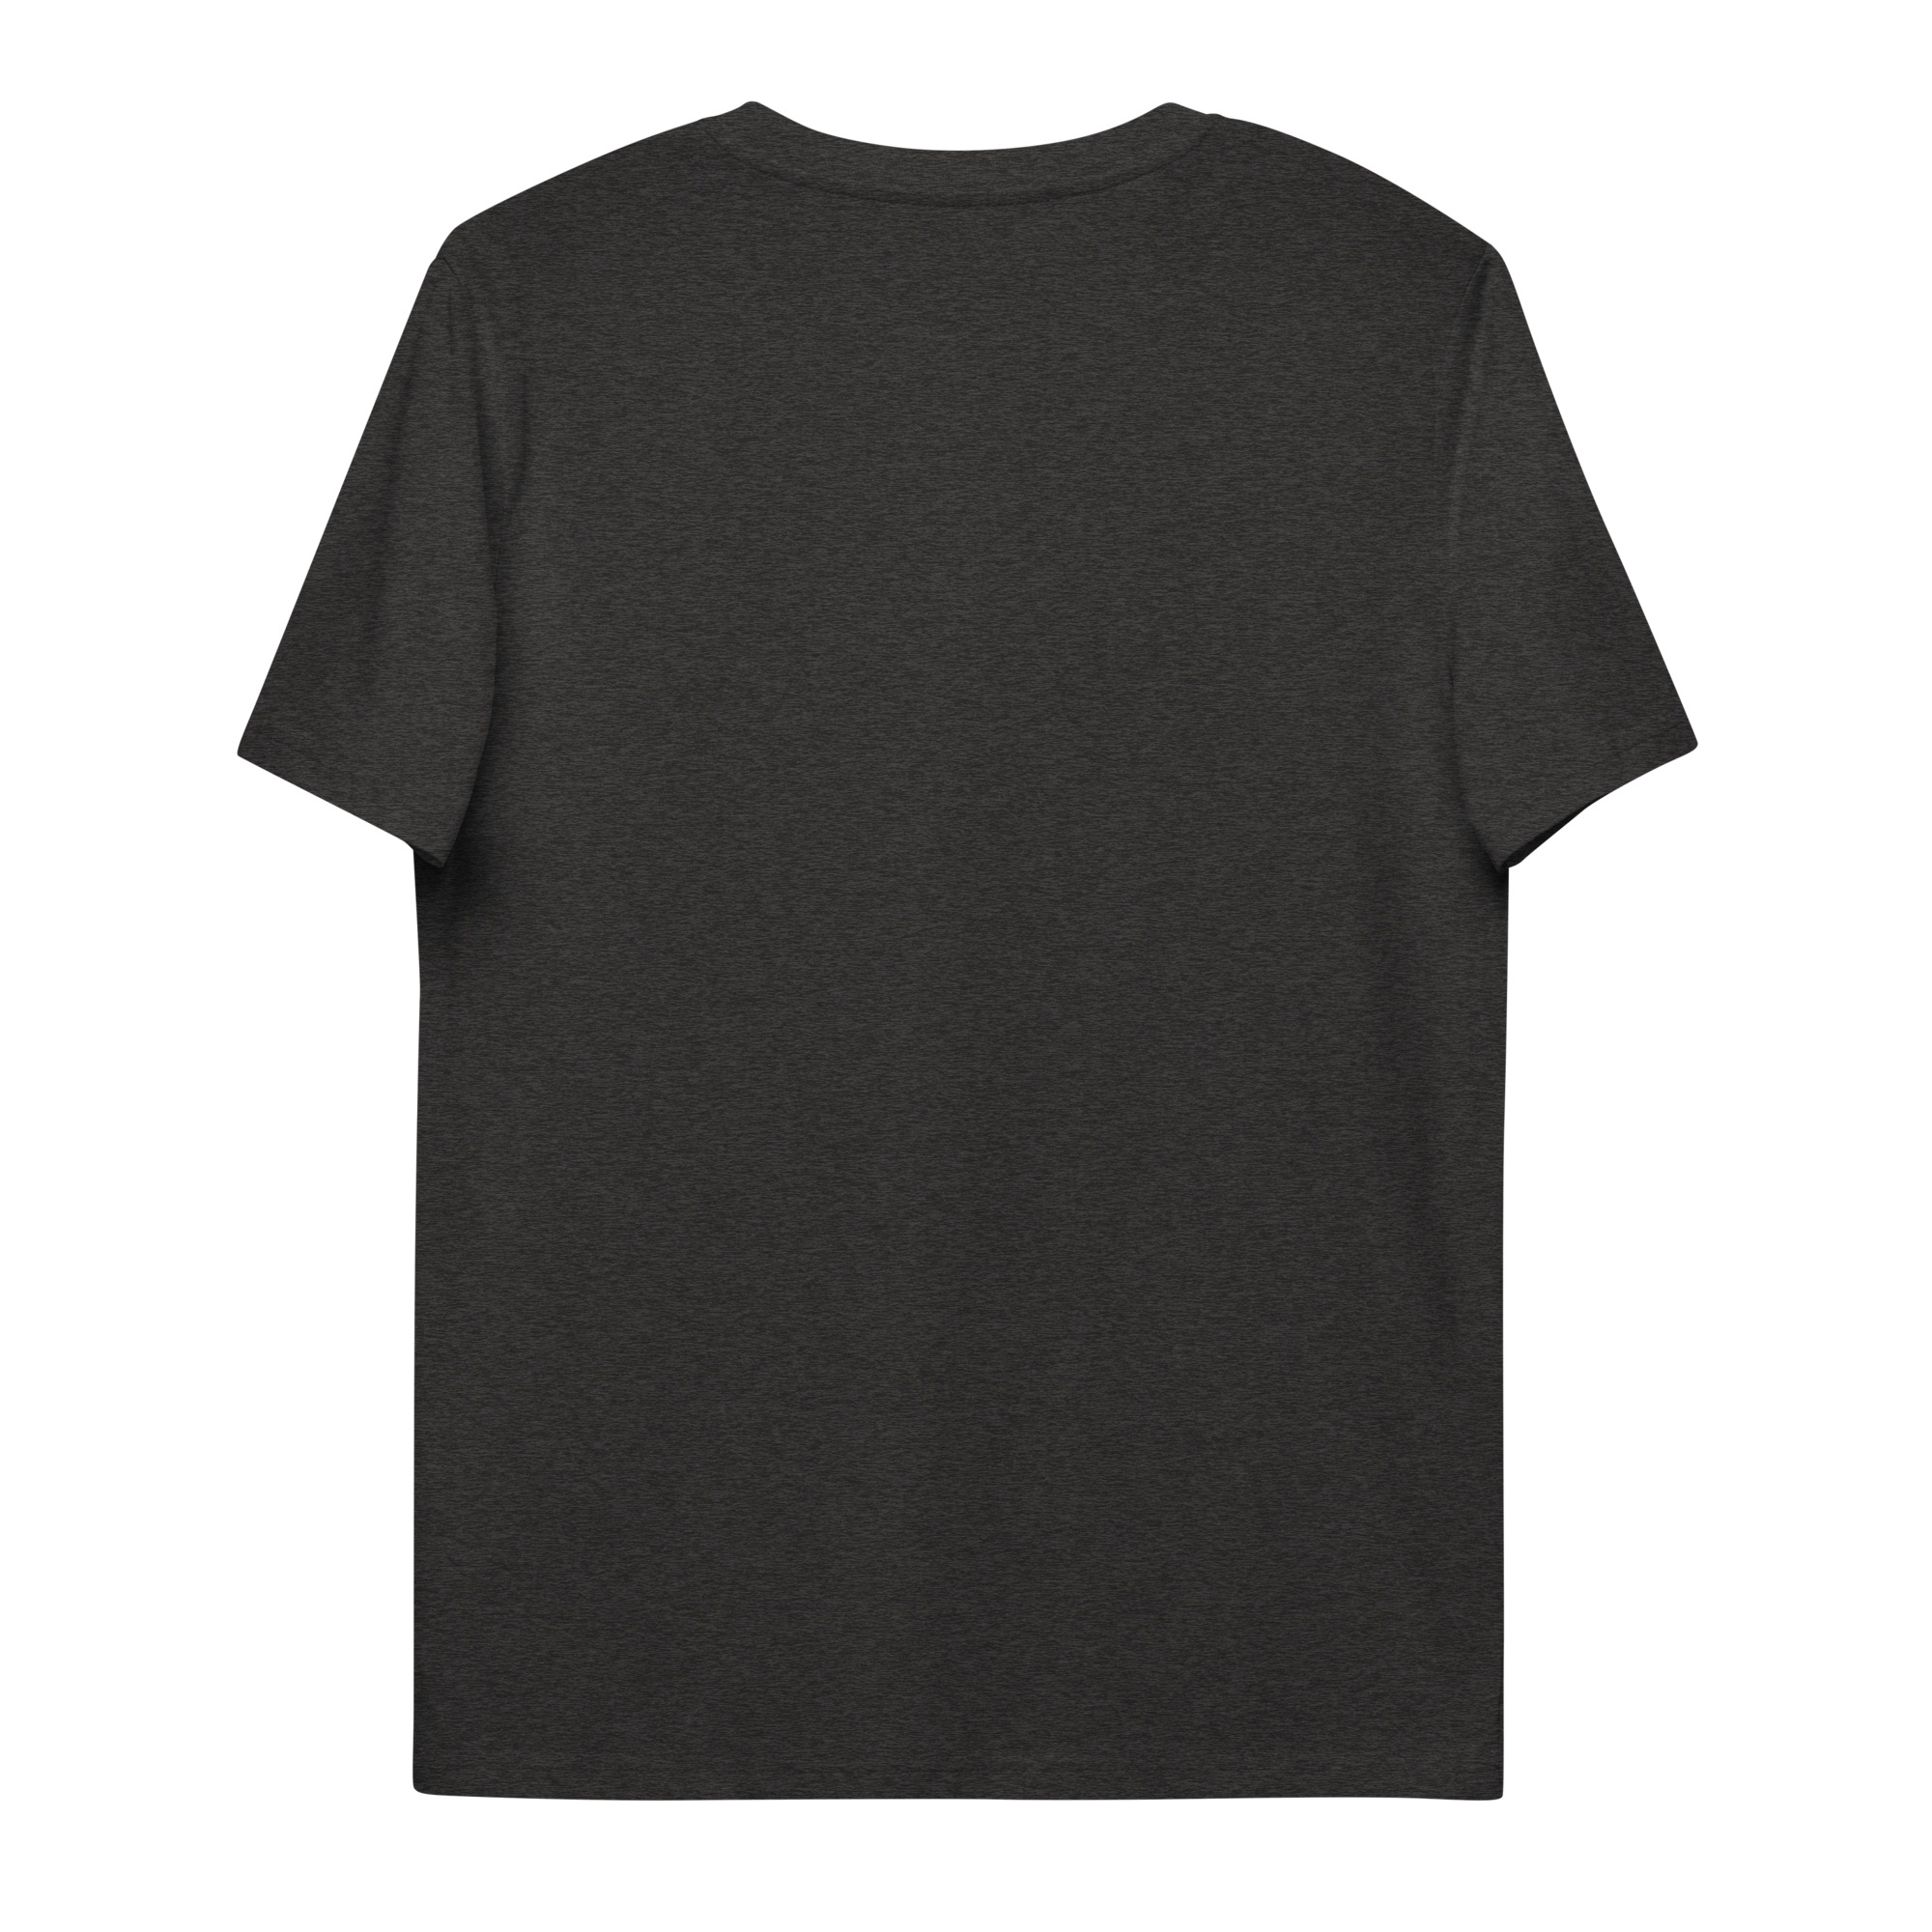 BARSCH Emblem gestickt Bio-Baumwoll T-Shirt